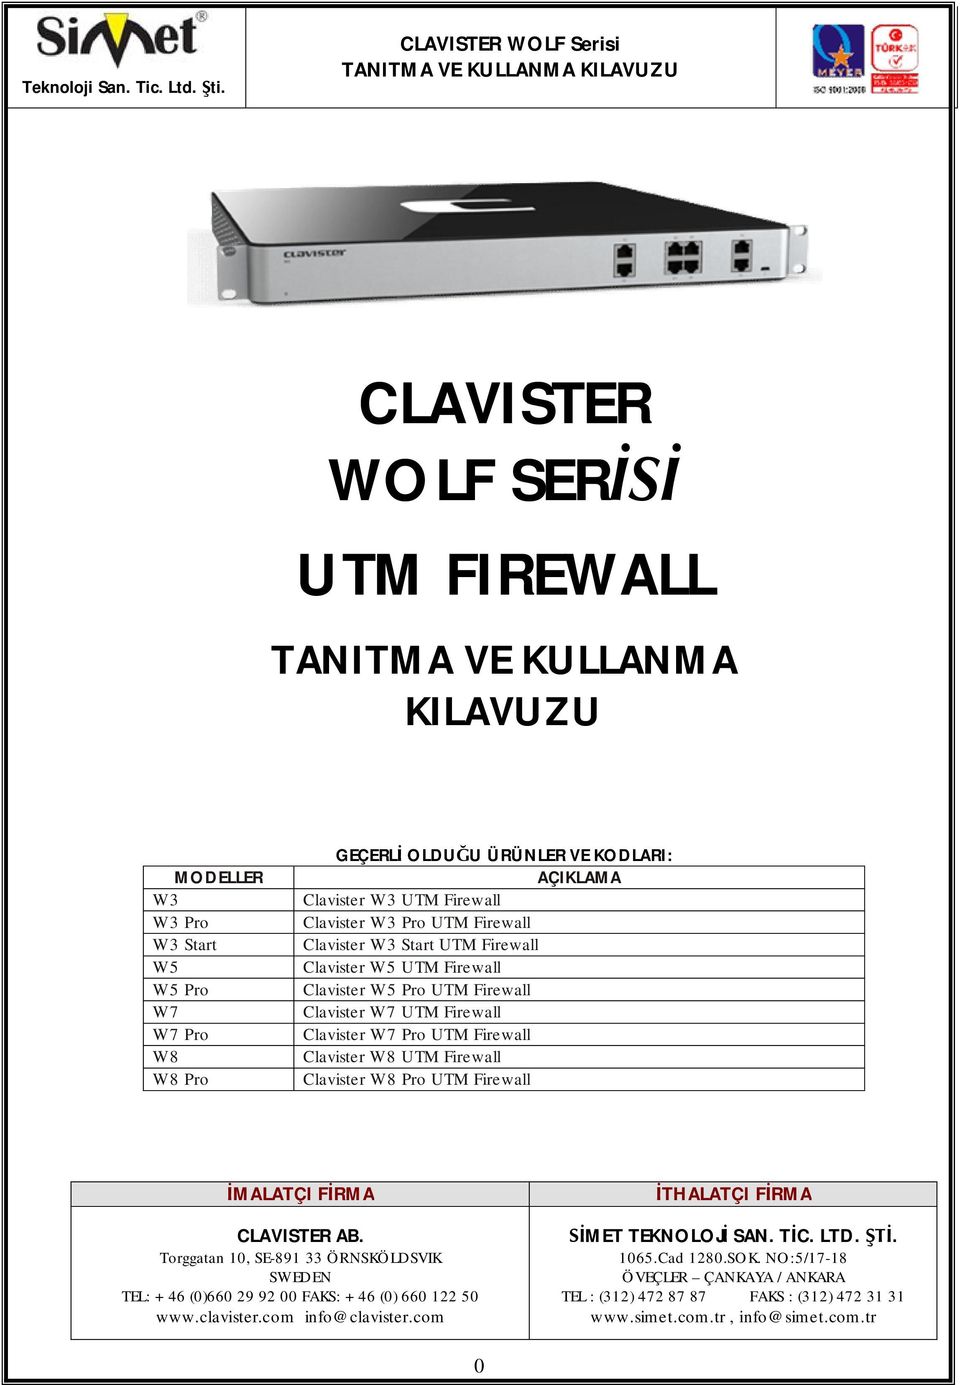 Clavister W3 Pro UTM Firewall Clavister W3 Start UTM Firewall Clavister W5 UTM Firewall Clavister W5 Pro UTM Firewall Clavister W7 UTM Firewall Clavister W7 Pro UTM Firewall Clavister W8 UTM